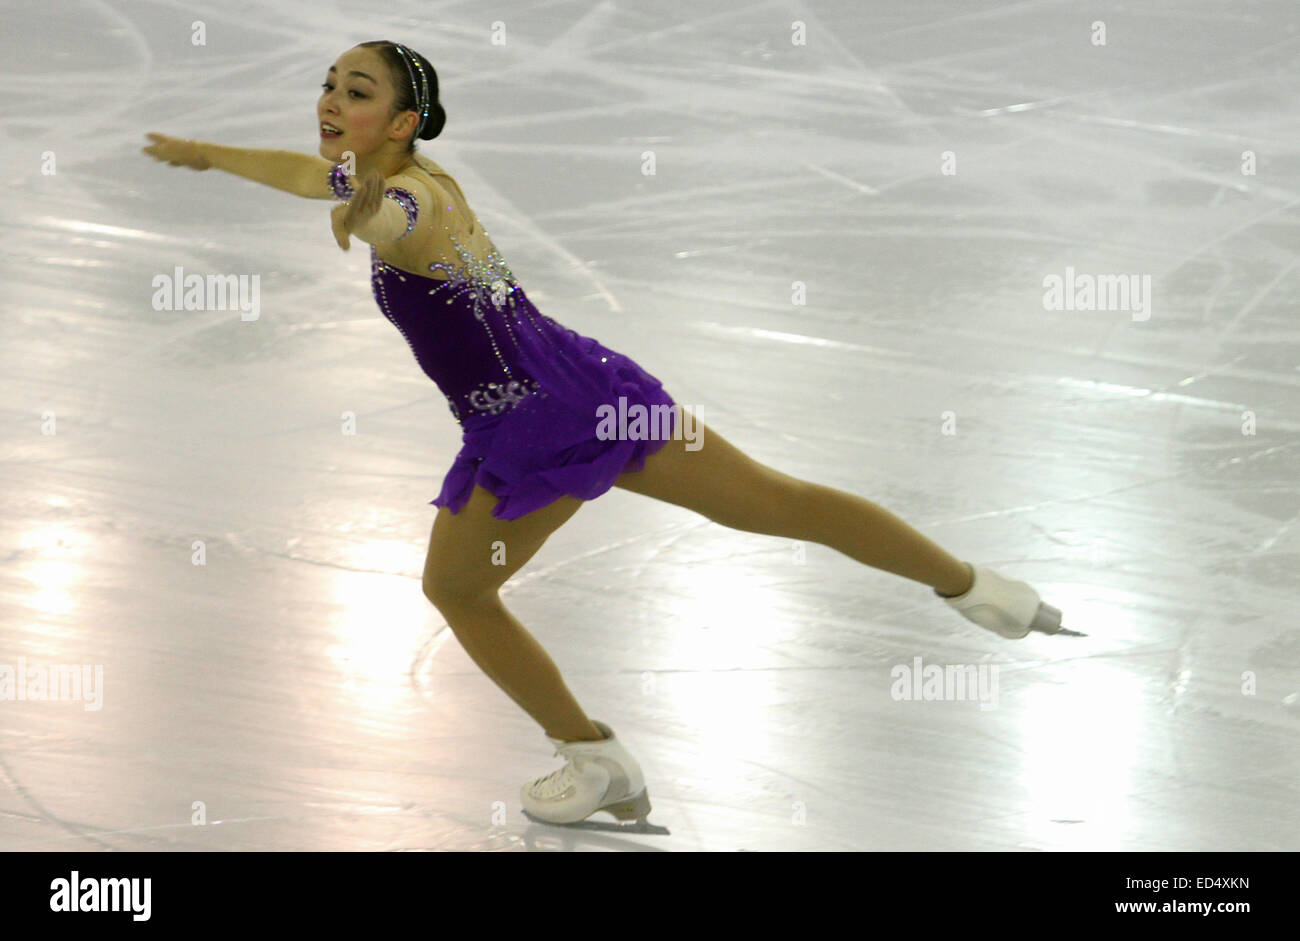 Barcelone, Espagne. Dec 11, 2014. ISU Grand Prix of Figure Skating Final 2014. Picture Show Rika Hongo (JPN) au cours de l'Action © programme court dames Plus Sport/Alamy Live News Banque D'Images